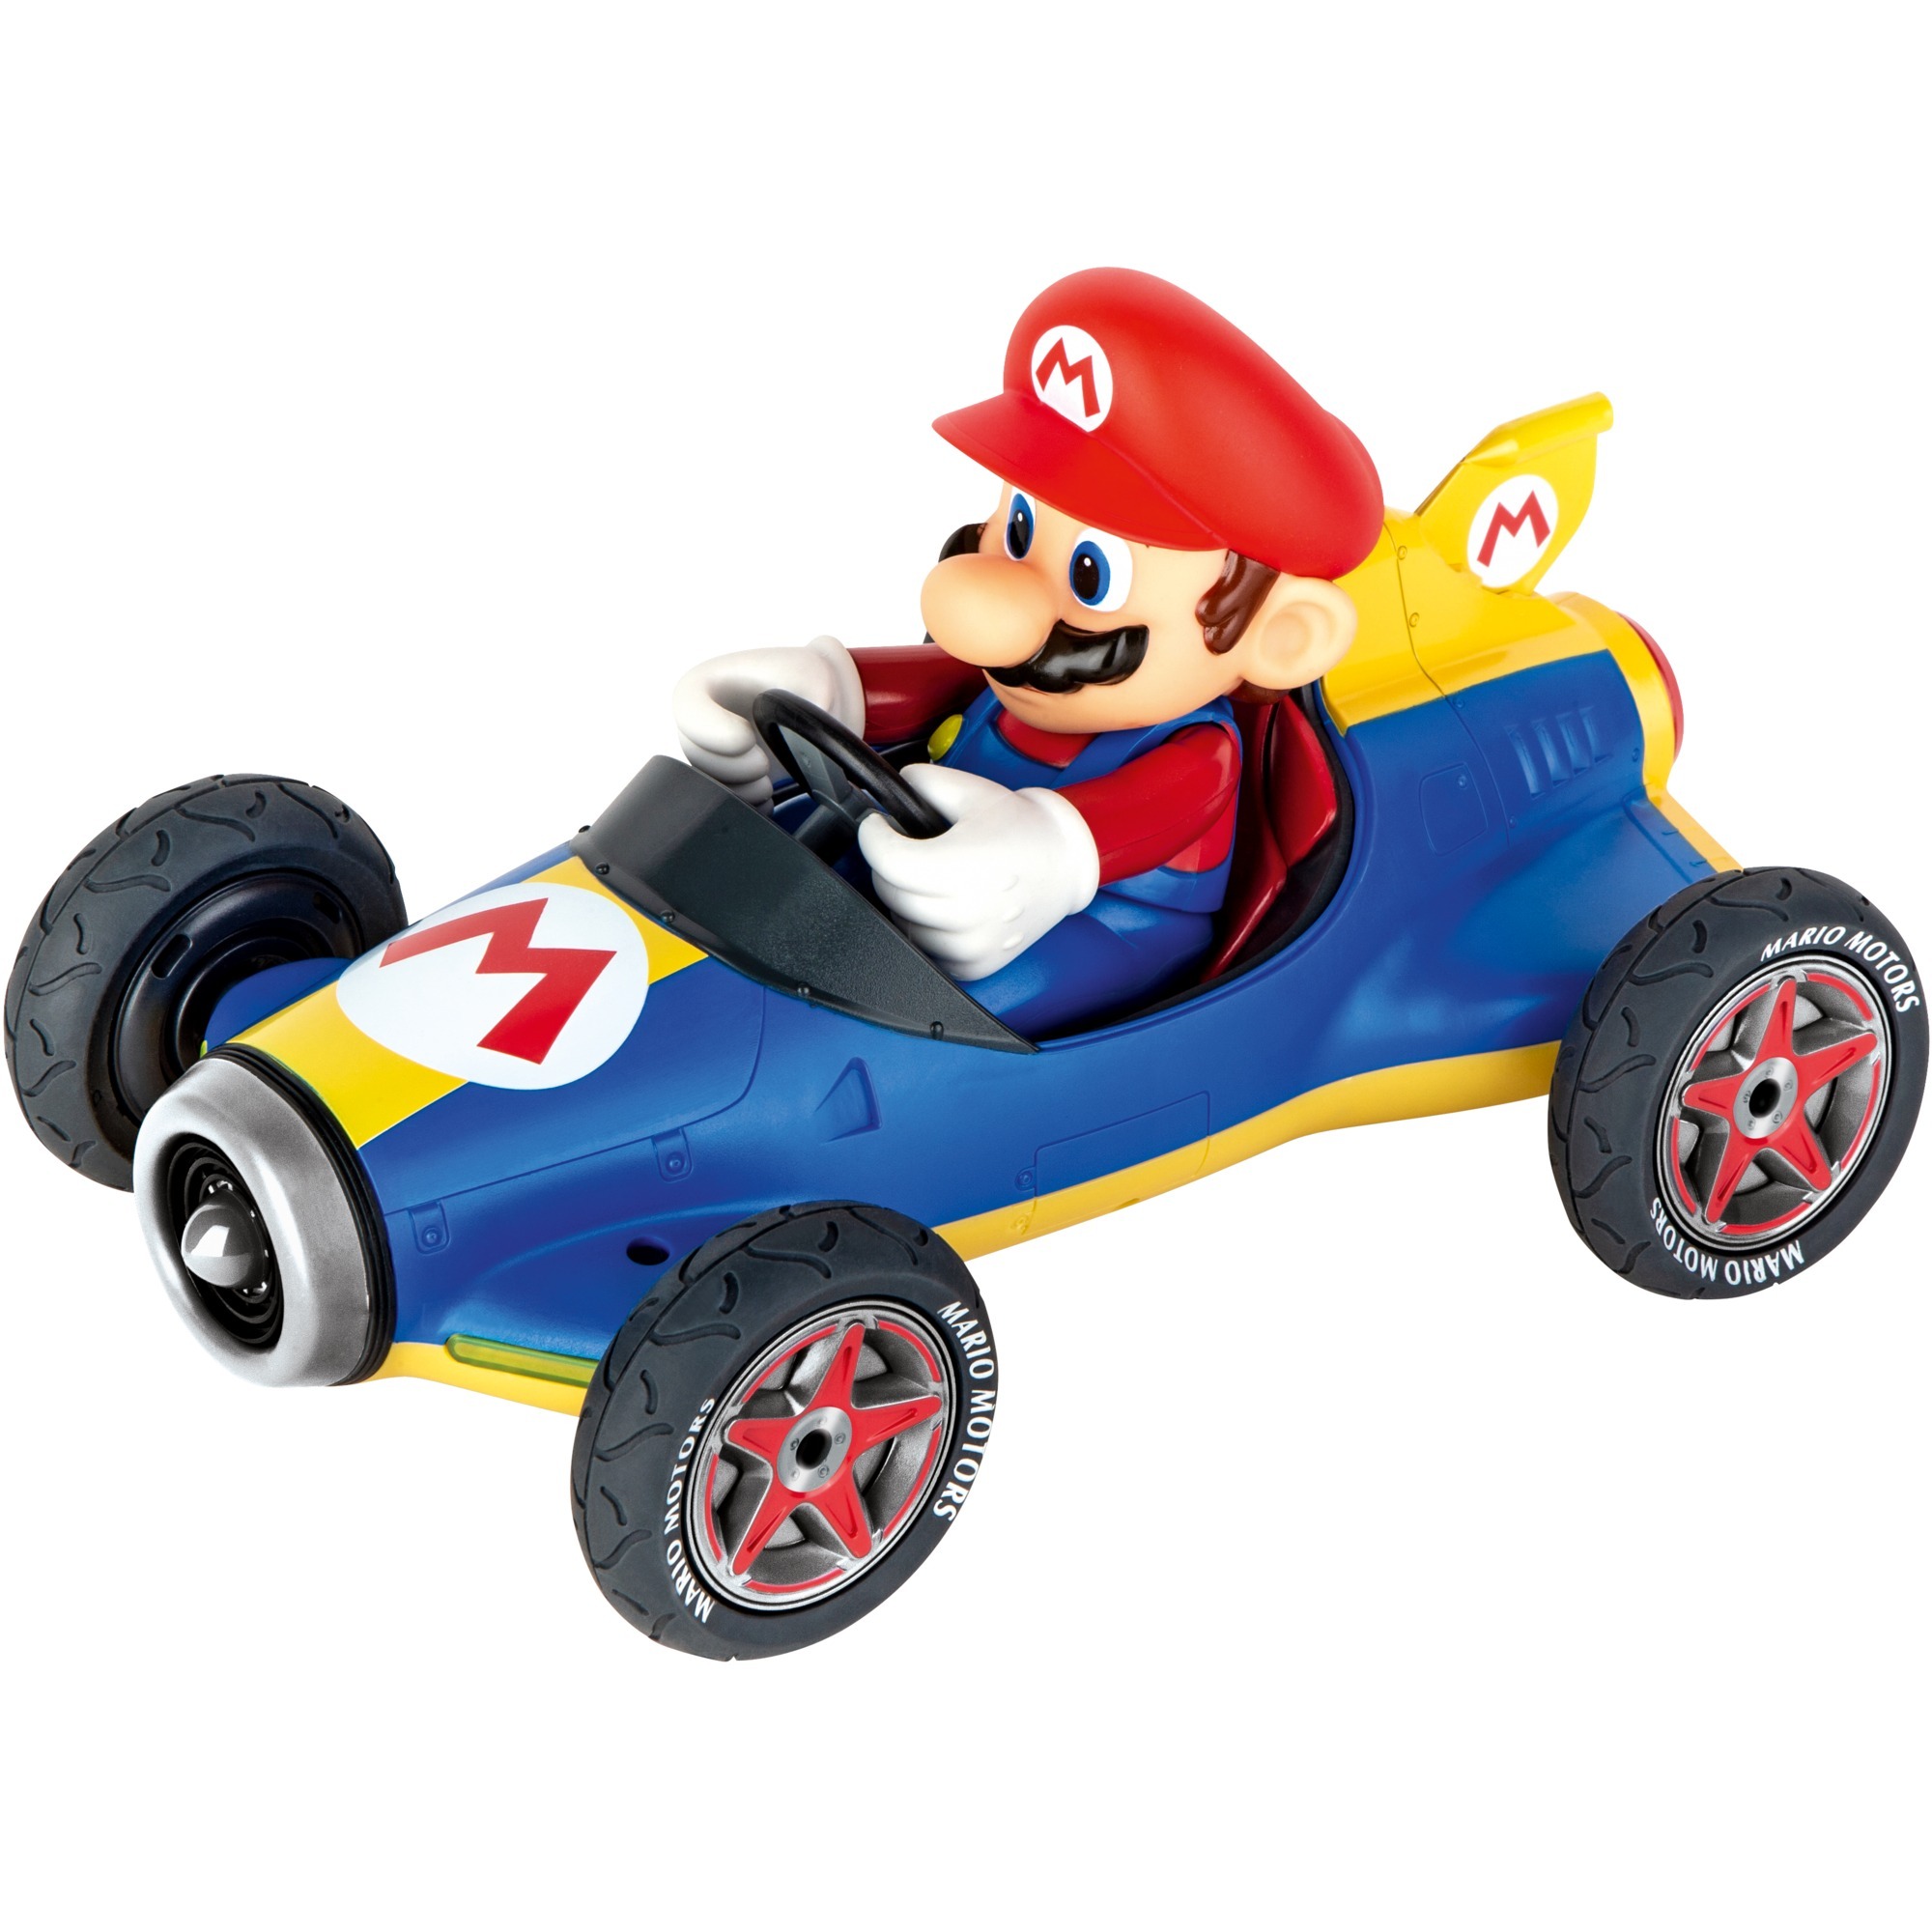 Image of Alternate - RC Mario Kart Mach 8 - Mario online einkaufen bei Alternate